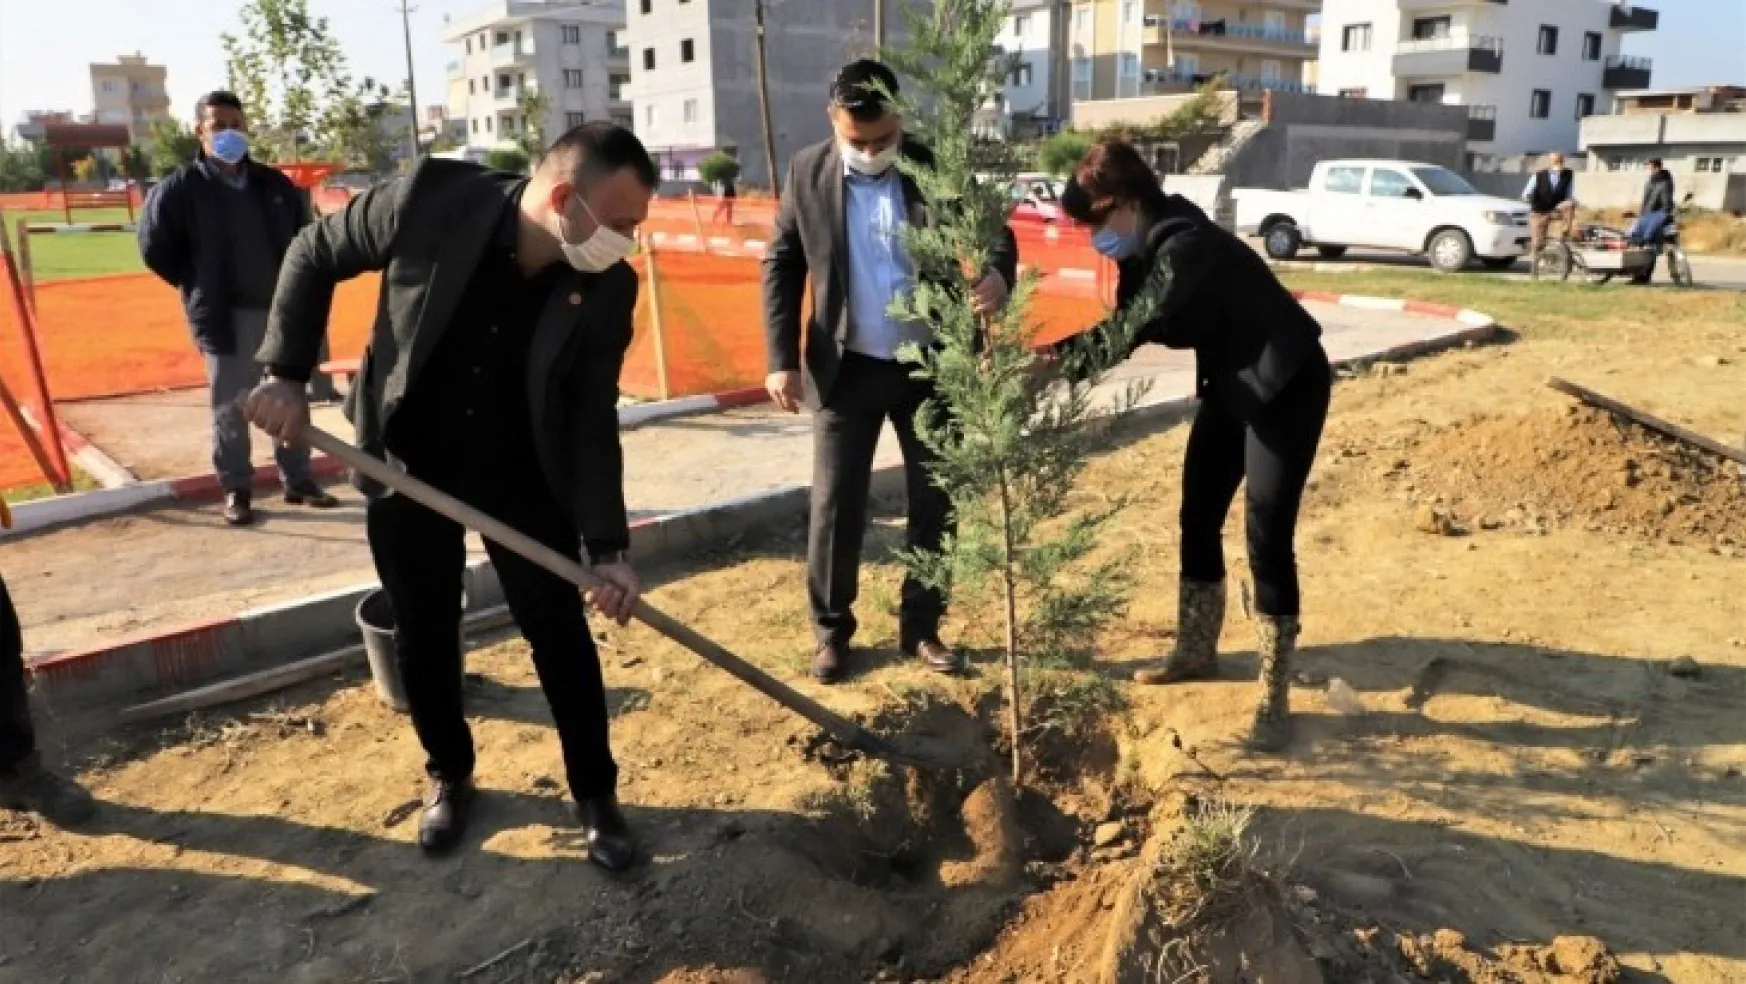 Atatürk'ün Vefatının 82. Yılı Anısına 82 Ağaç Dikildi